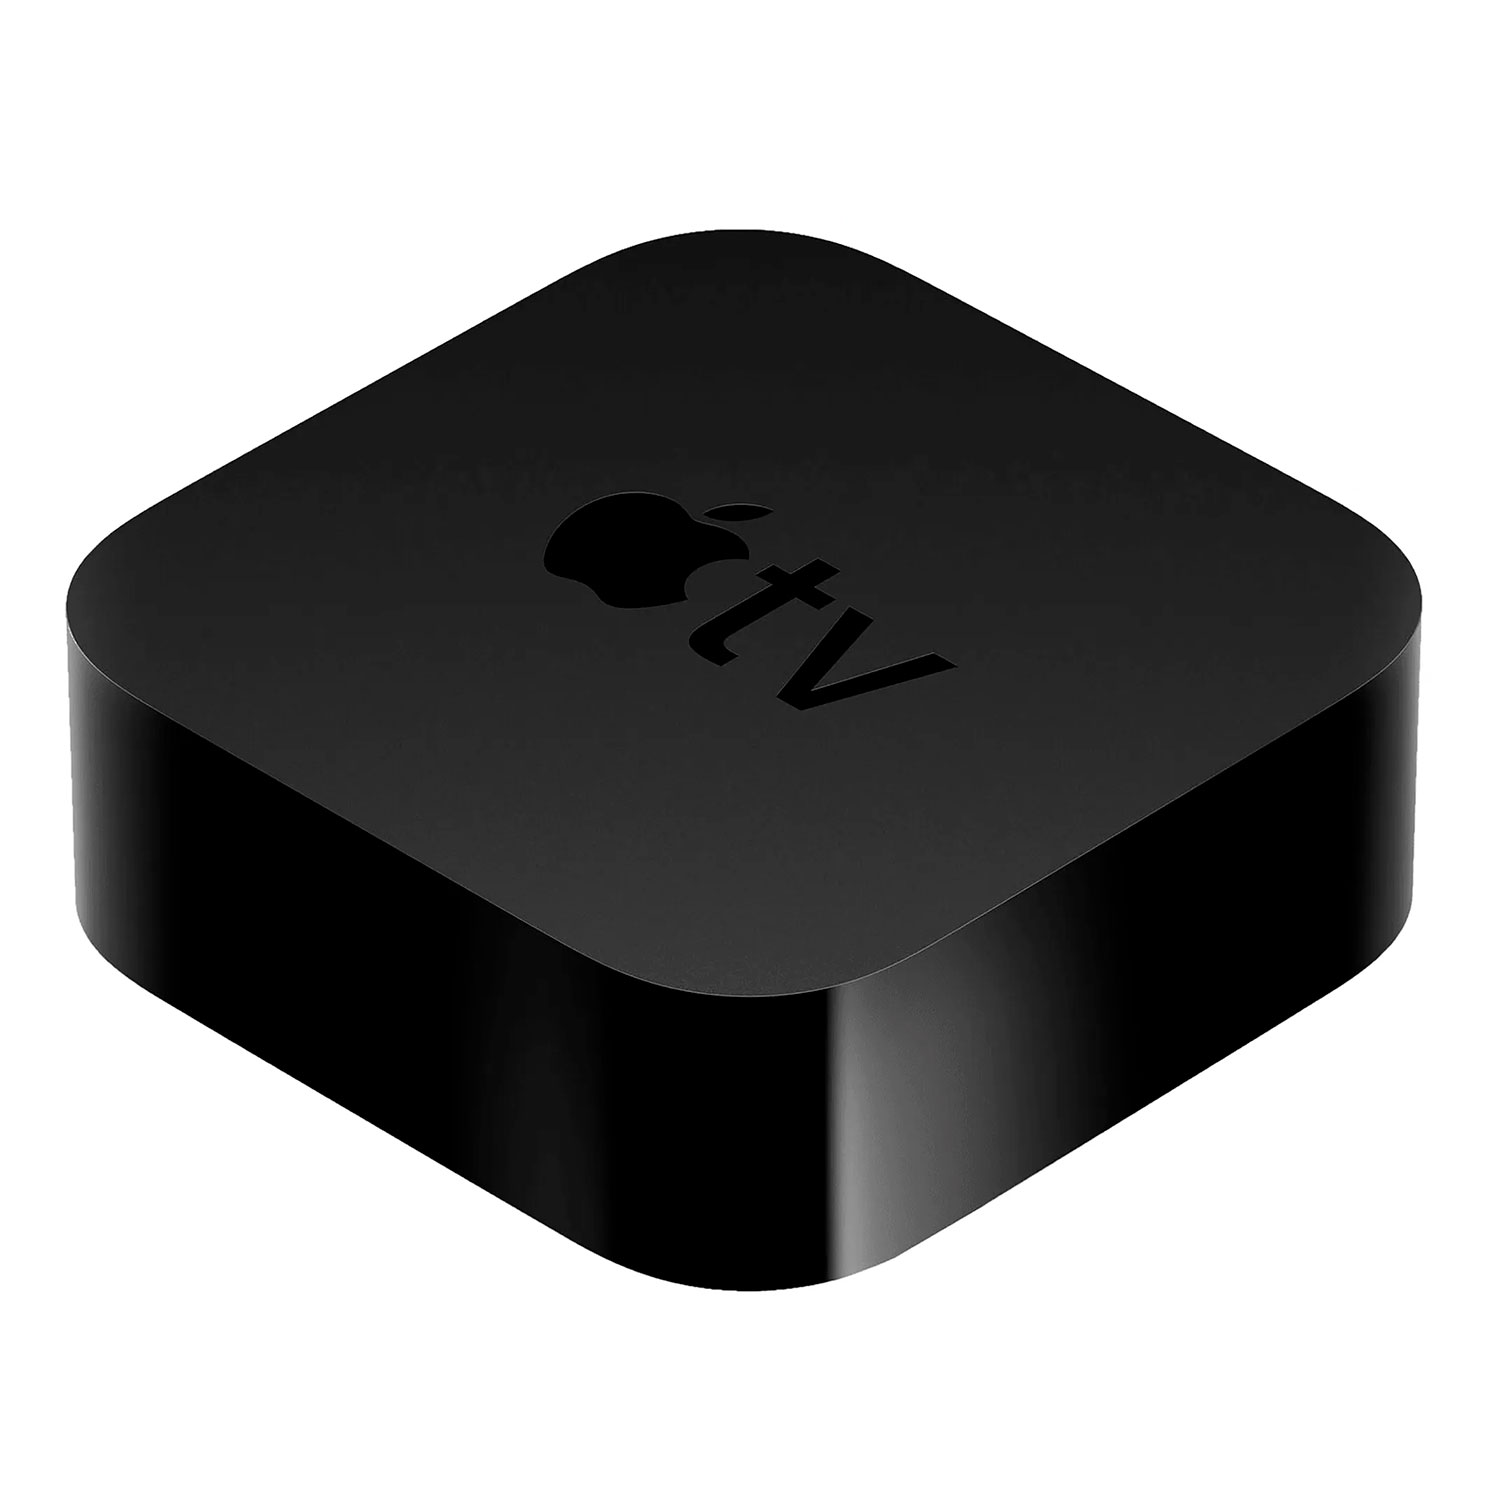 Apple TV no Paraguai: especificações, vantagens e preço